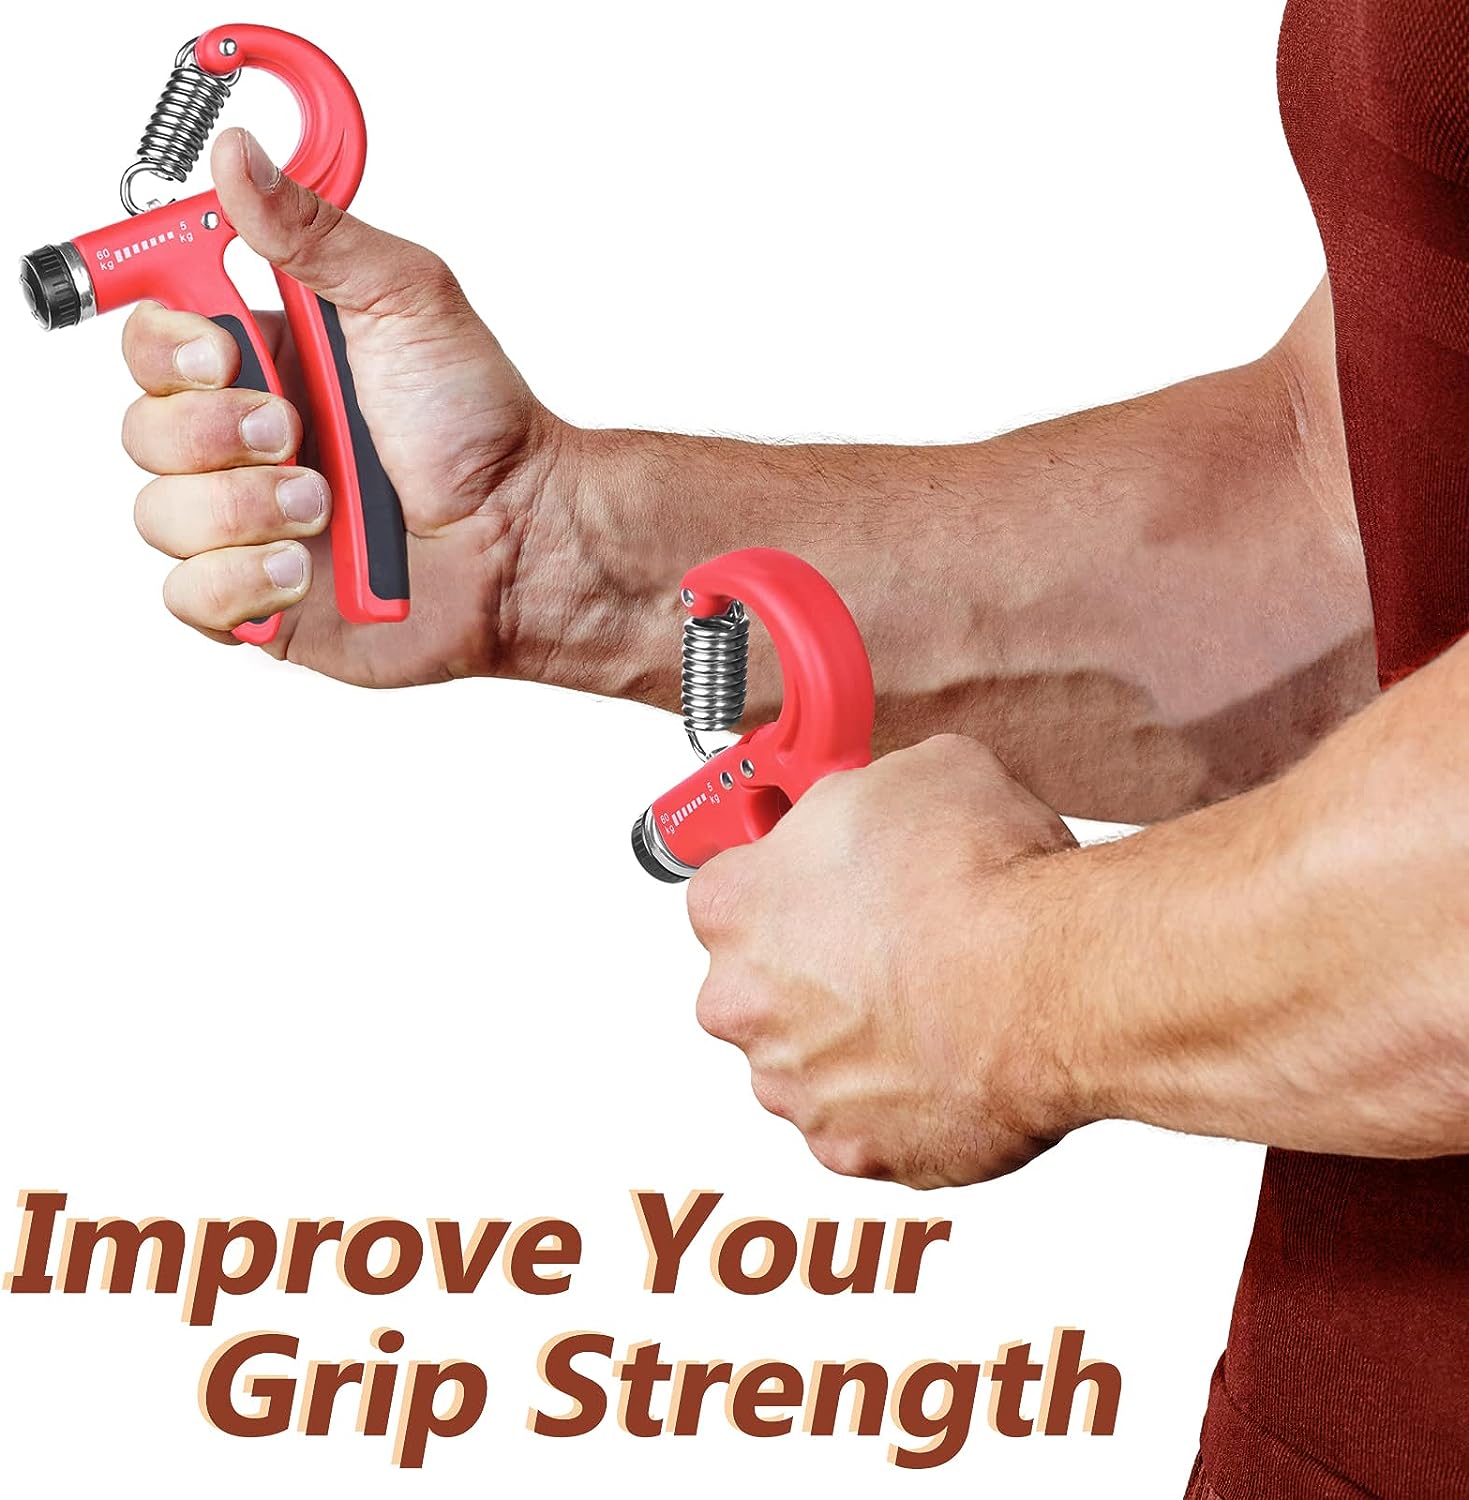 Hand Grip Strengthener, Appareil de Renforcement du Grip avec Résistance Réglable 5-60kg, Poignee Musculation Avant Bras Main Poignet pour la Rééducation et le Renforcement Musculaire - fitnessterapy